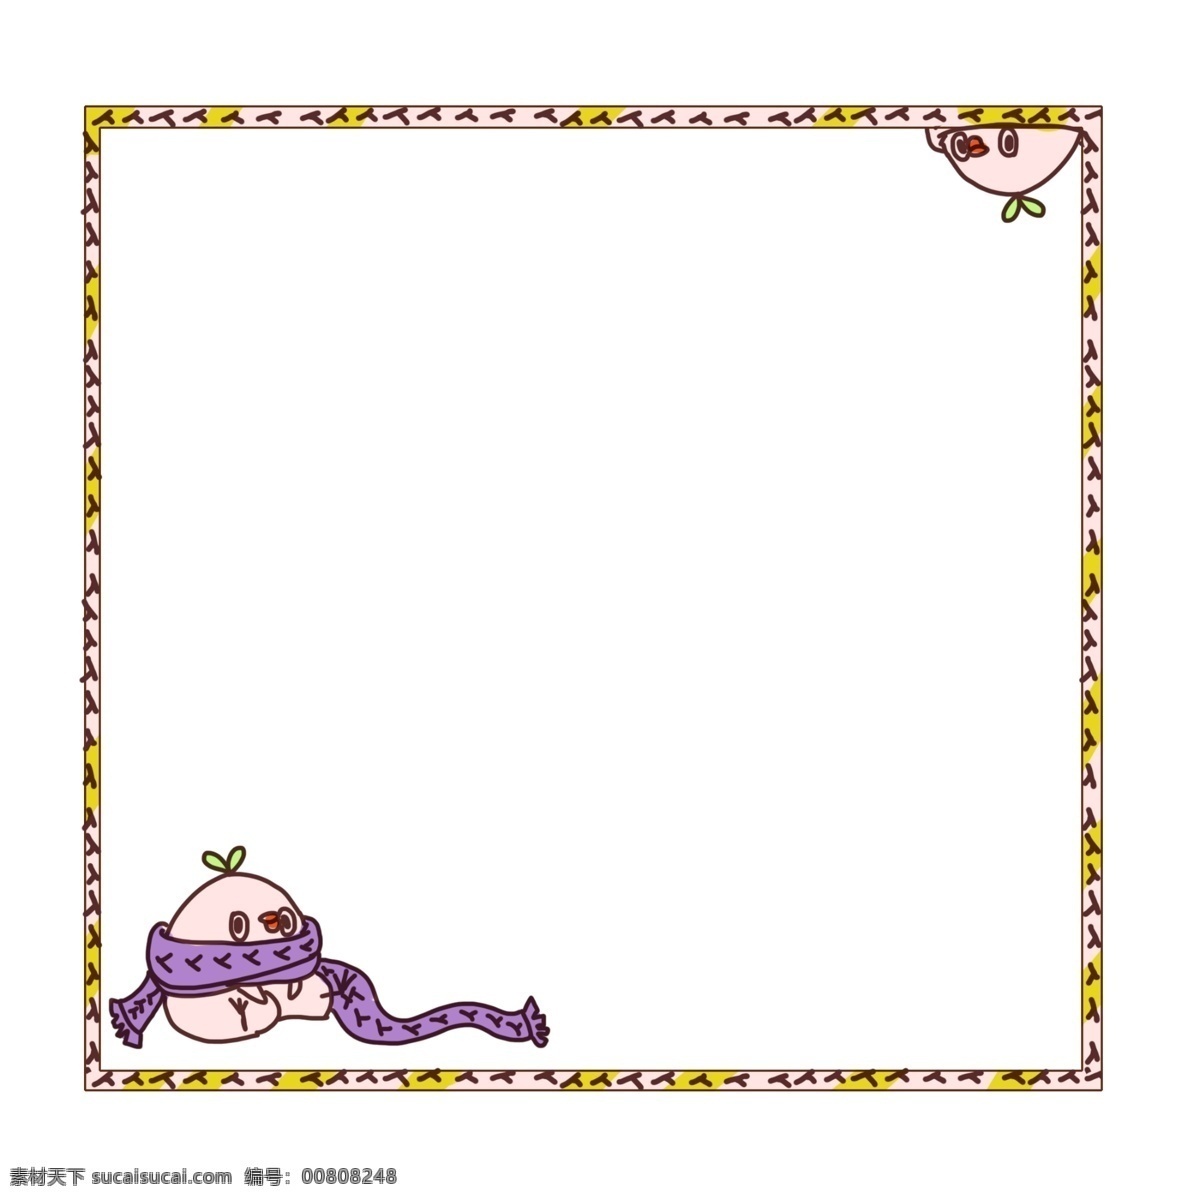 围巾 可爱 边框 插画 紫色的围巾 卡通插画 可爱边框 框框 框架 框子 围巾的边框 漂亮的边框